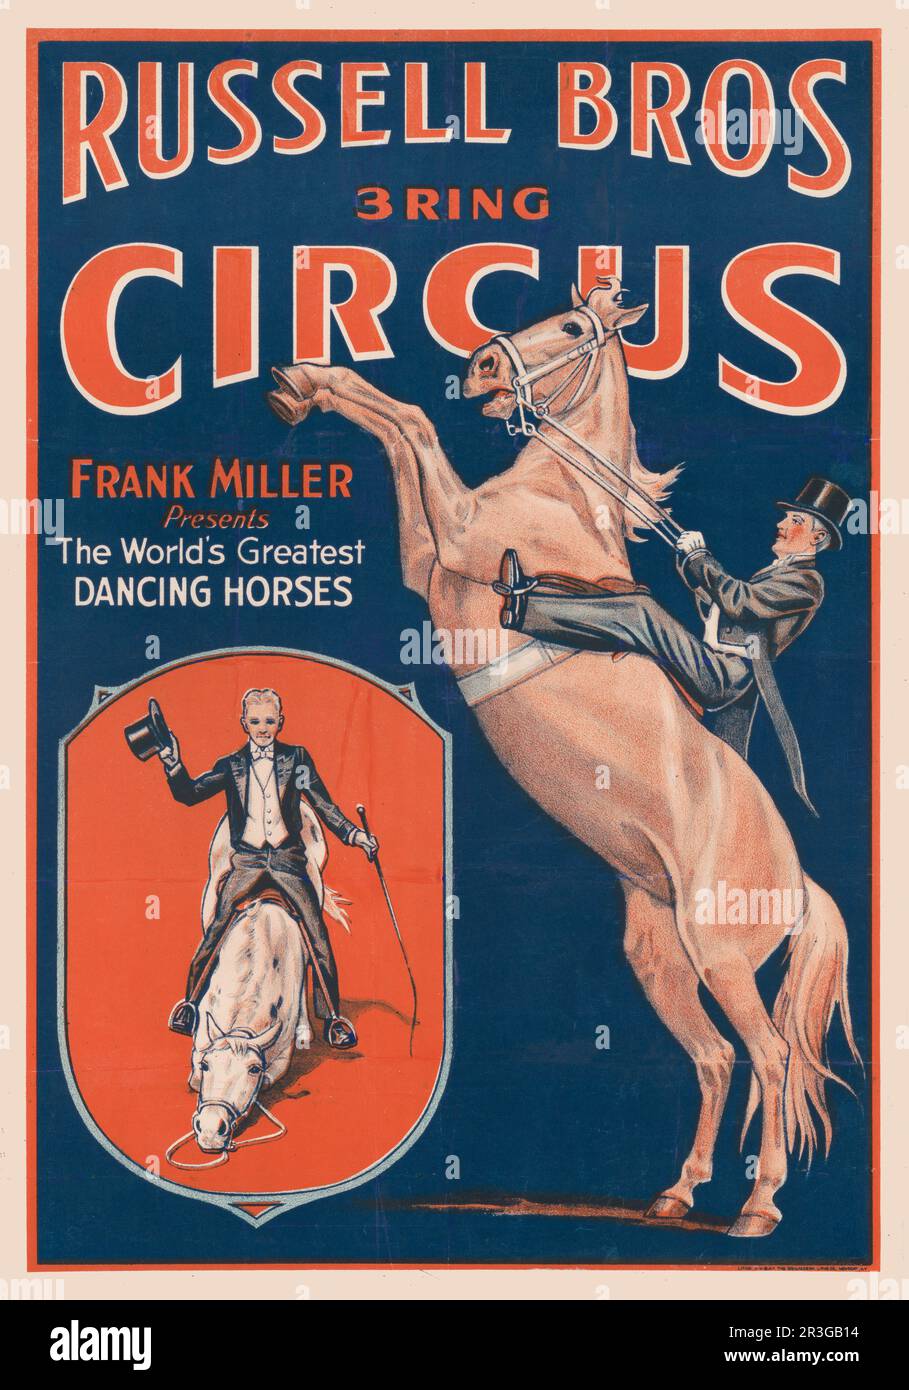 Affiche de cirque Russell Brothers vintage. Frank Miller présente les plus grands chevaux de danse du monde. Banque D'Images